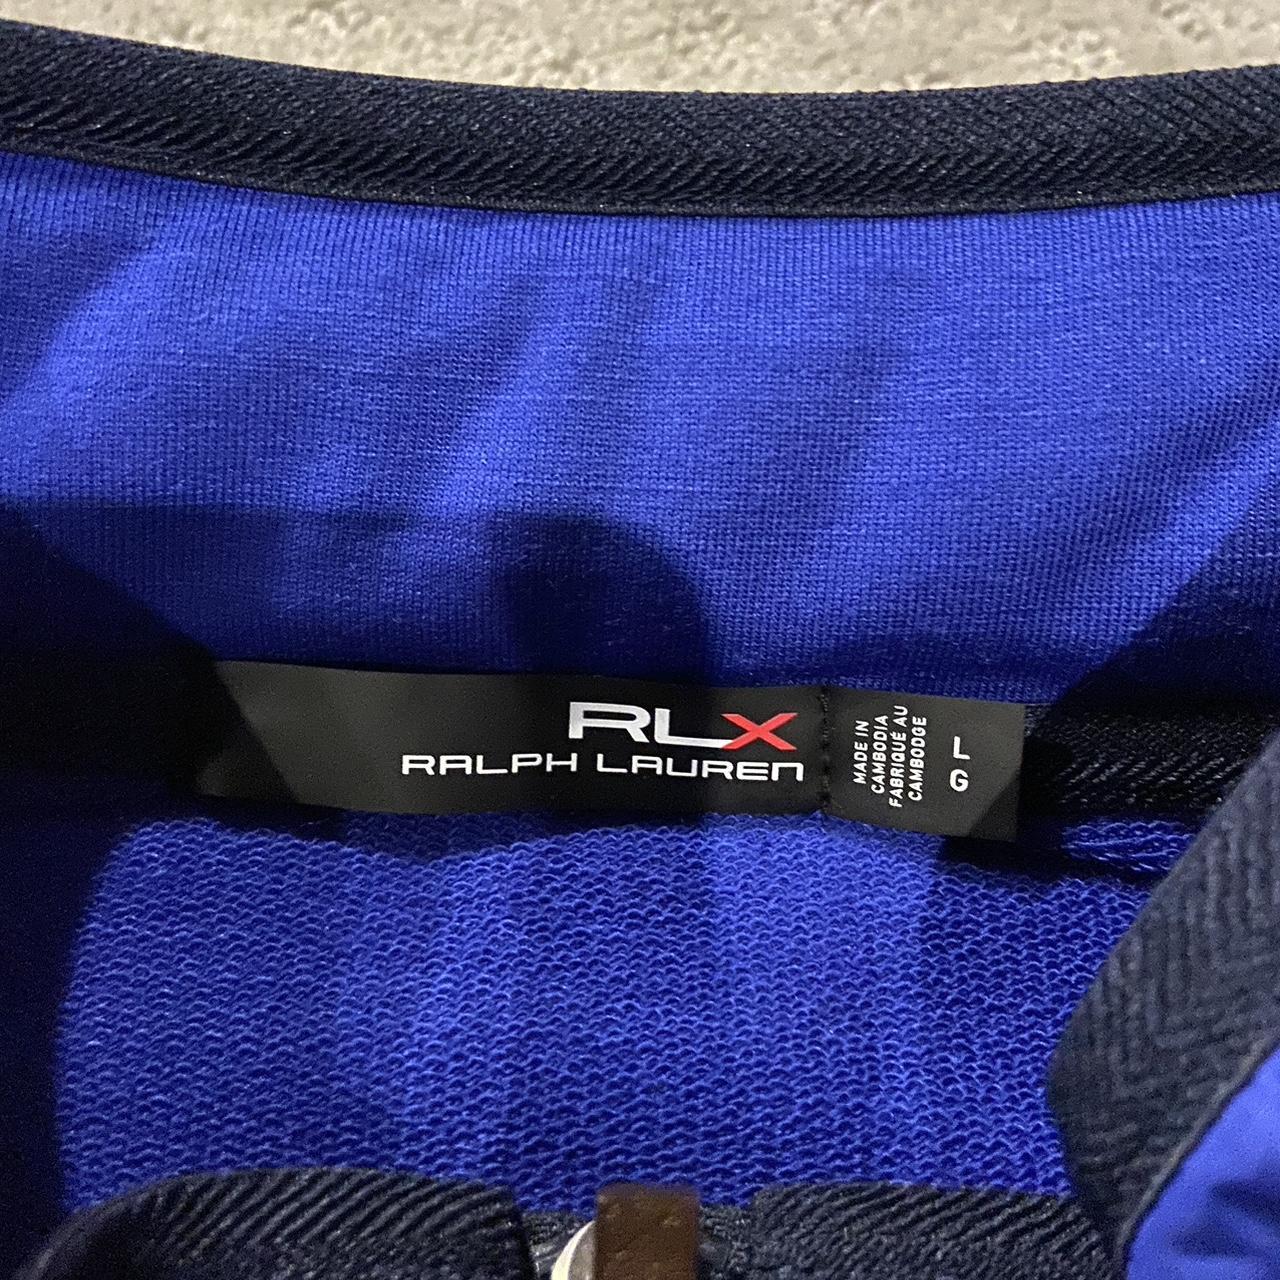 Ralph Lauren golf RLX zip up - Depop